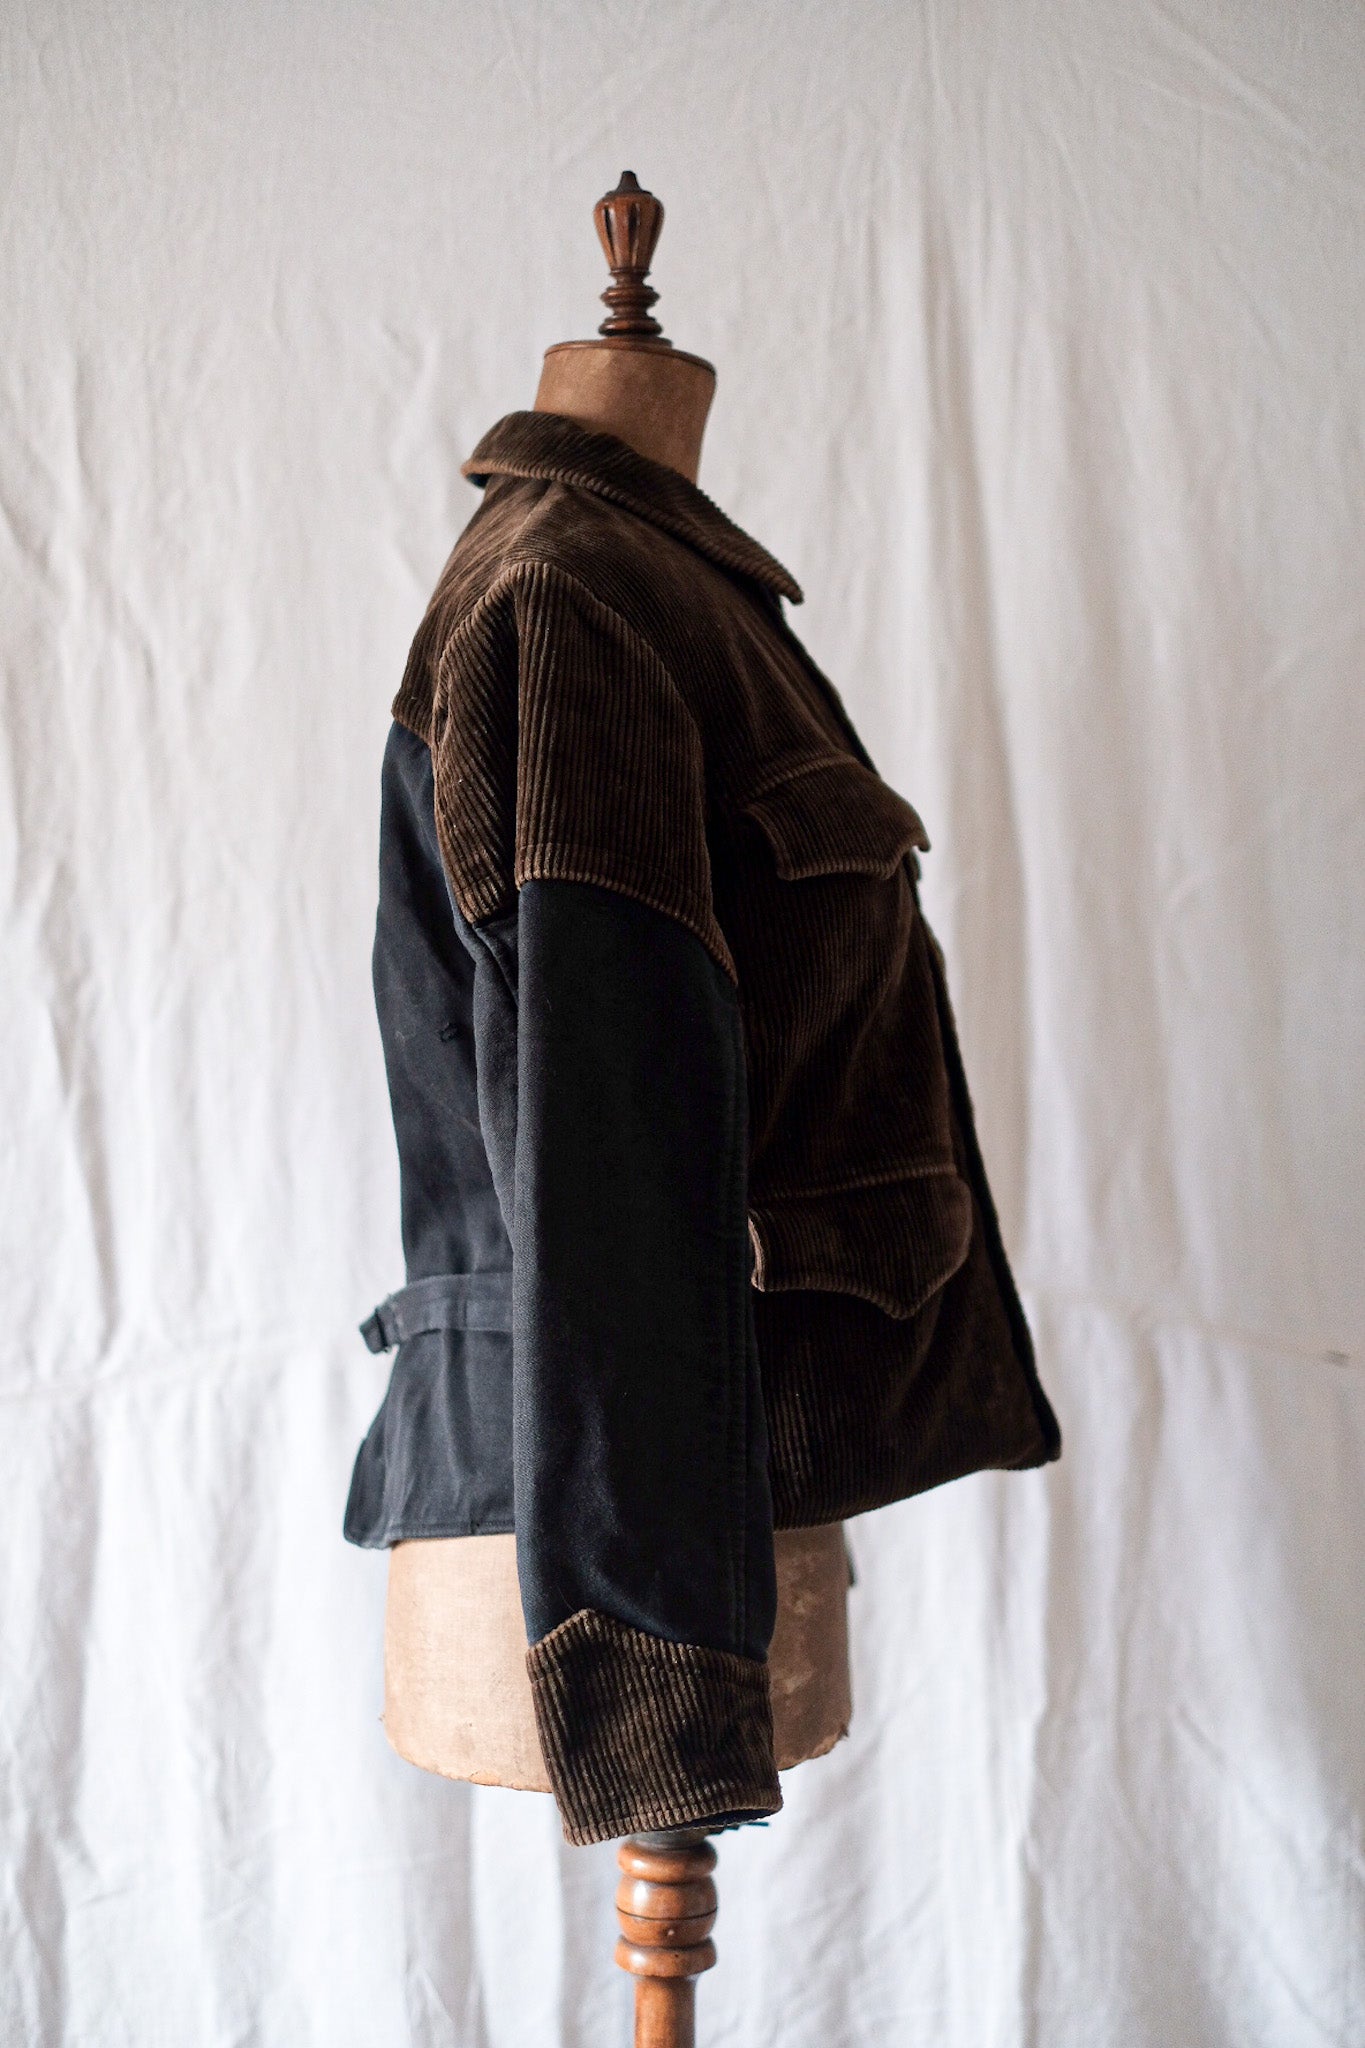 [~ 40's] Belge vintage brun nucuroy x noire de la veste de travail à double poitrine